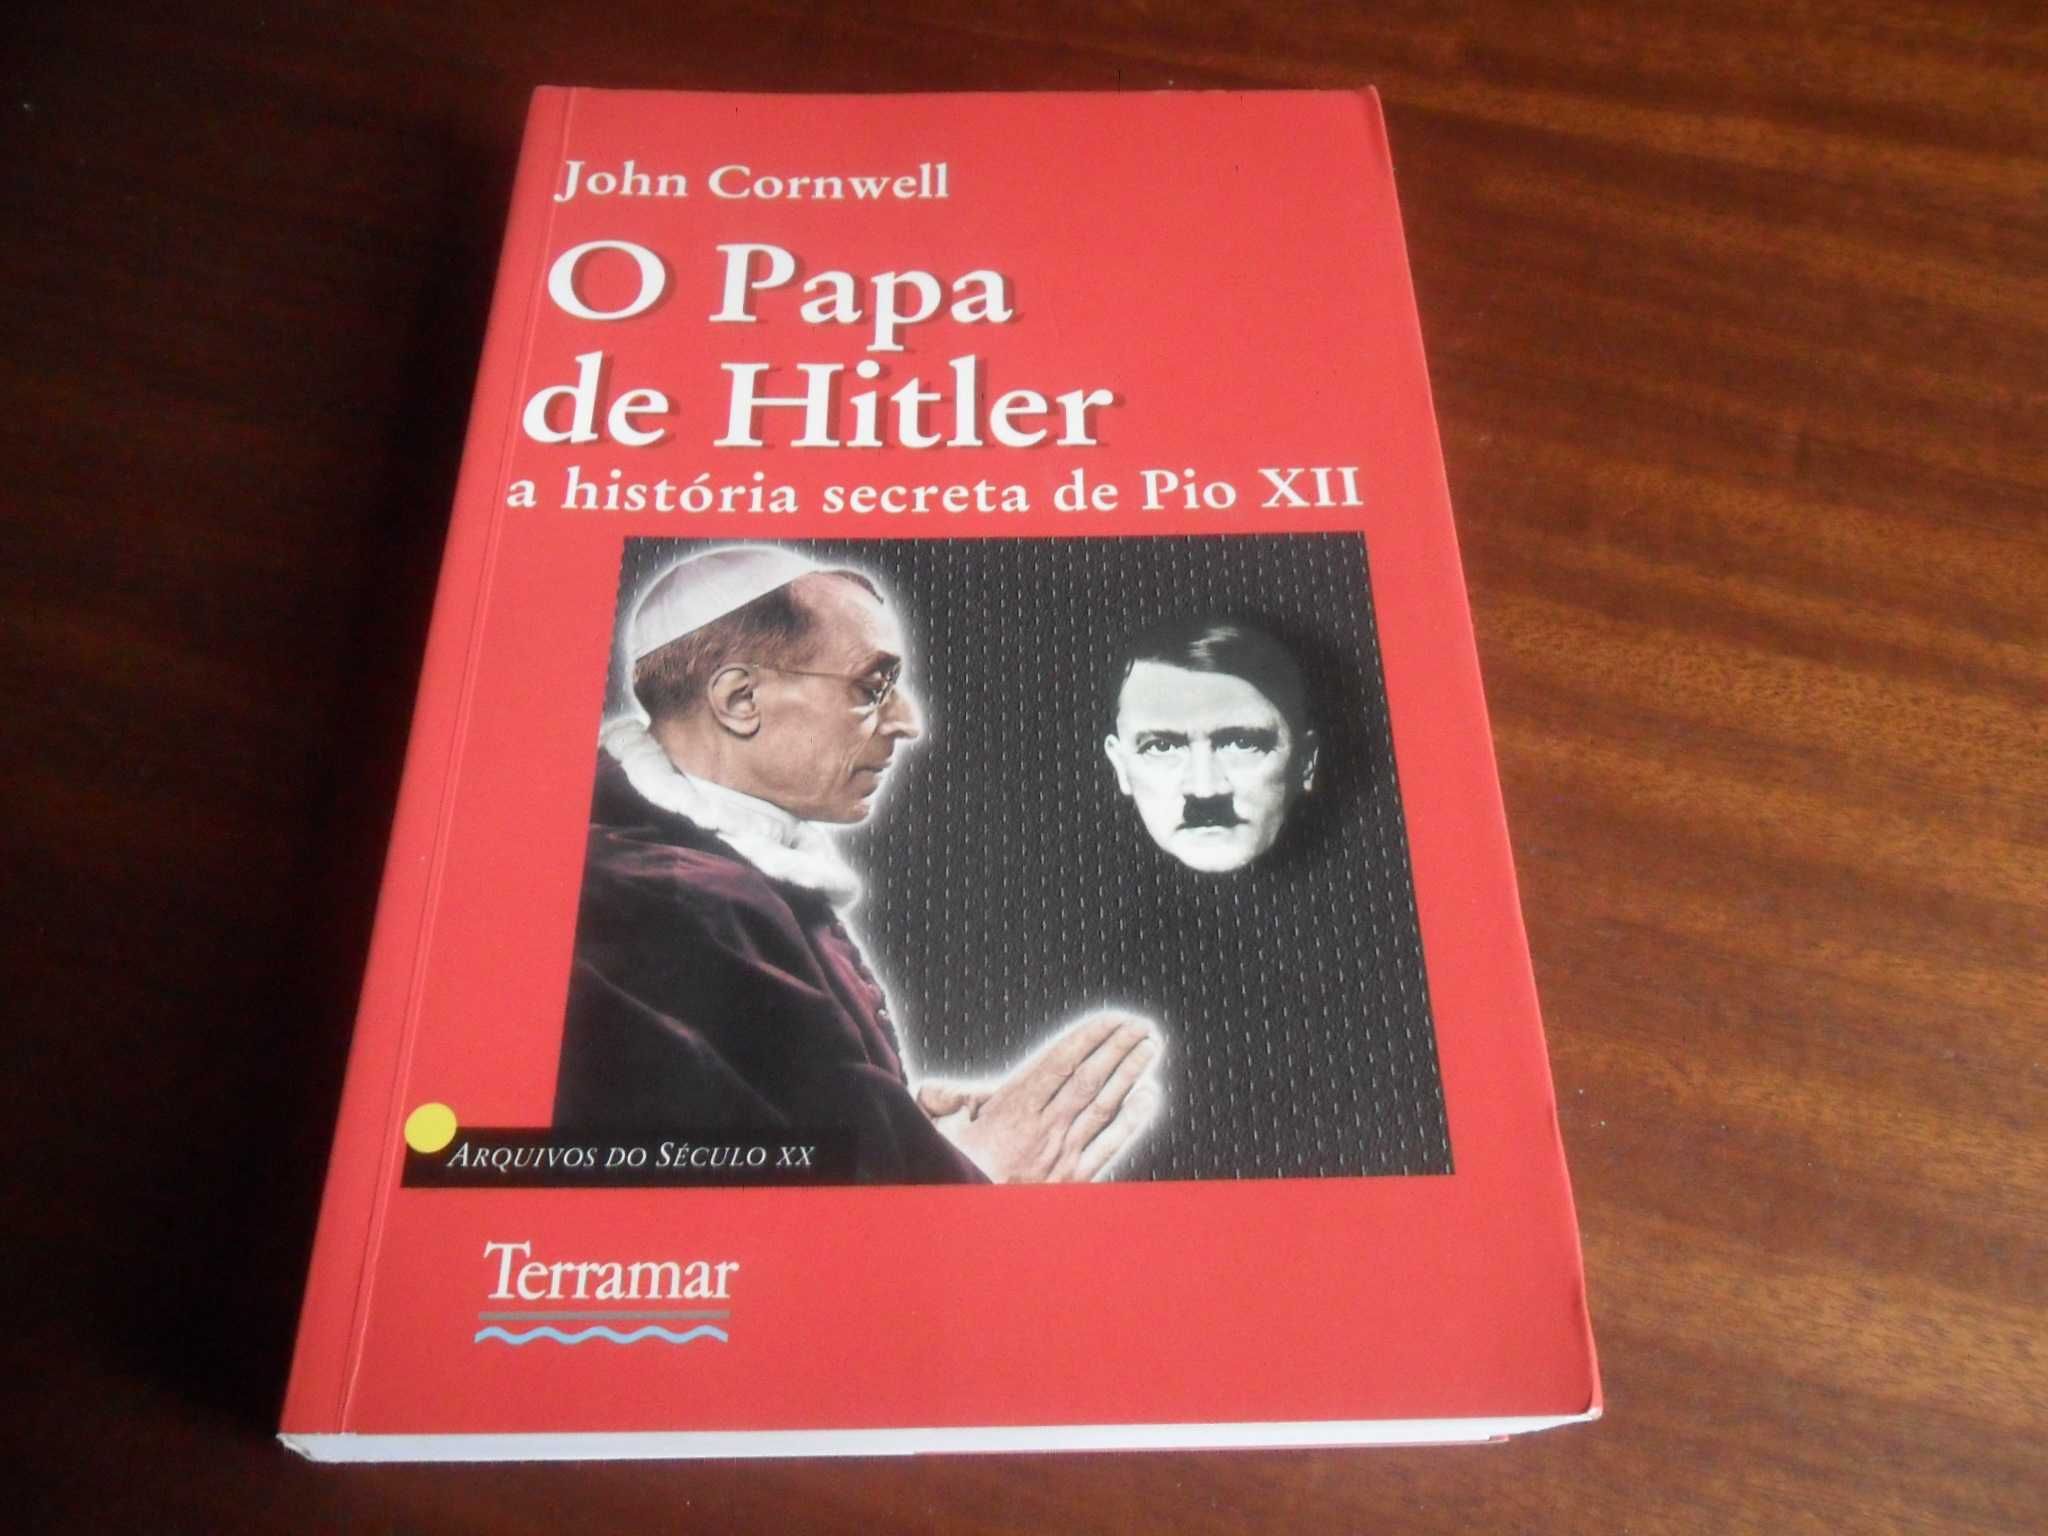 "O Papa de Hitler" - A História Secreta de Pio XII de John Cornwell